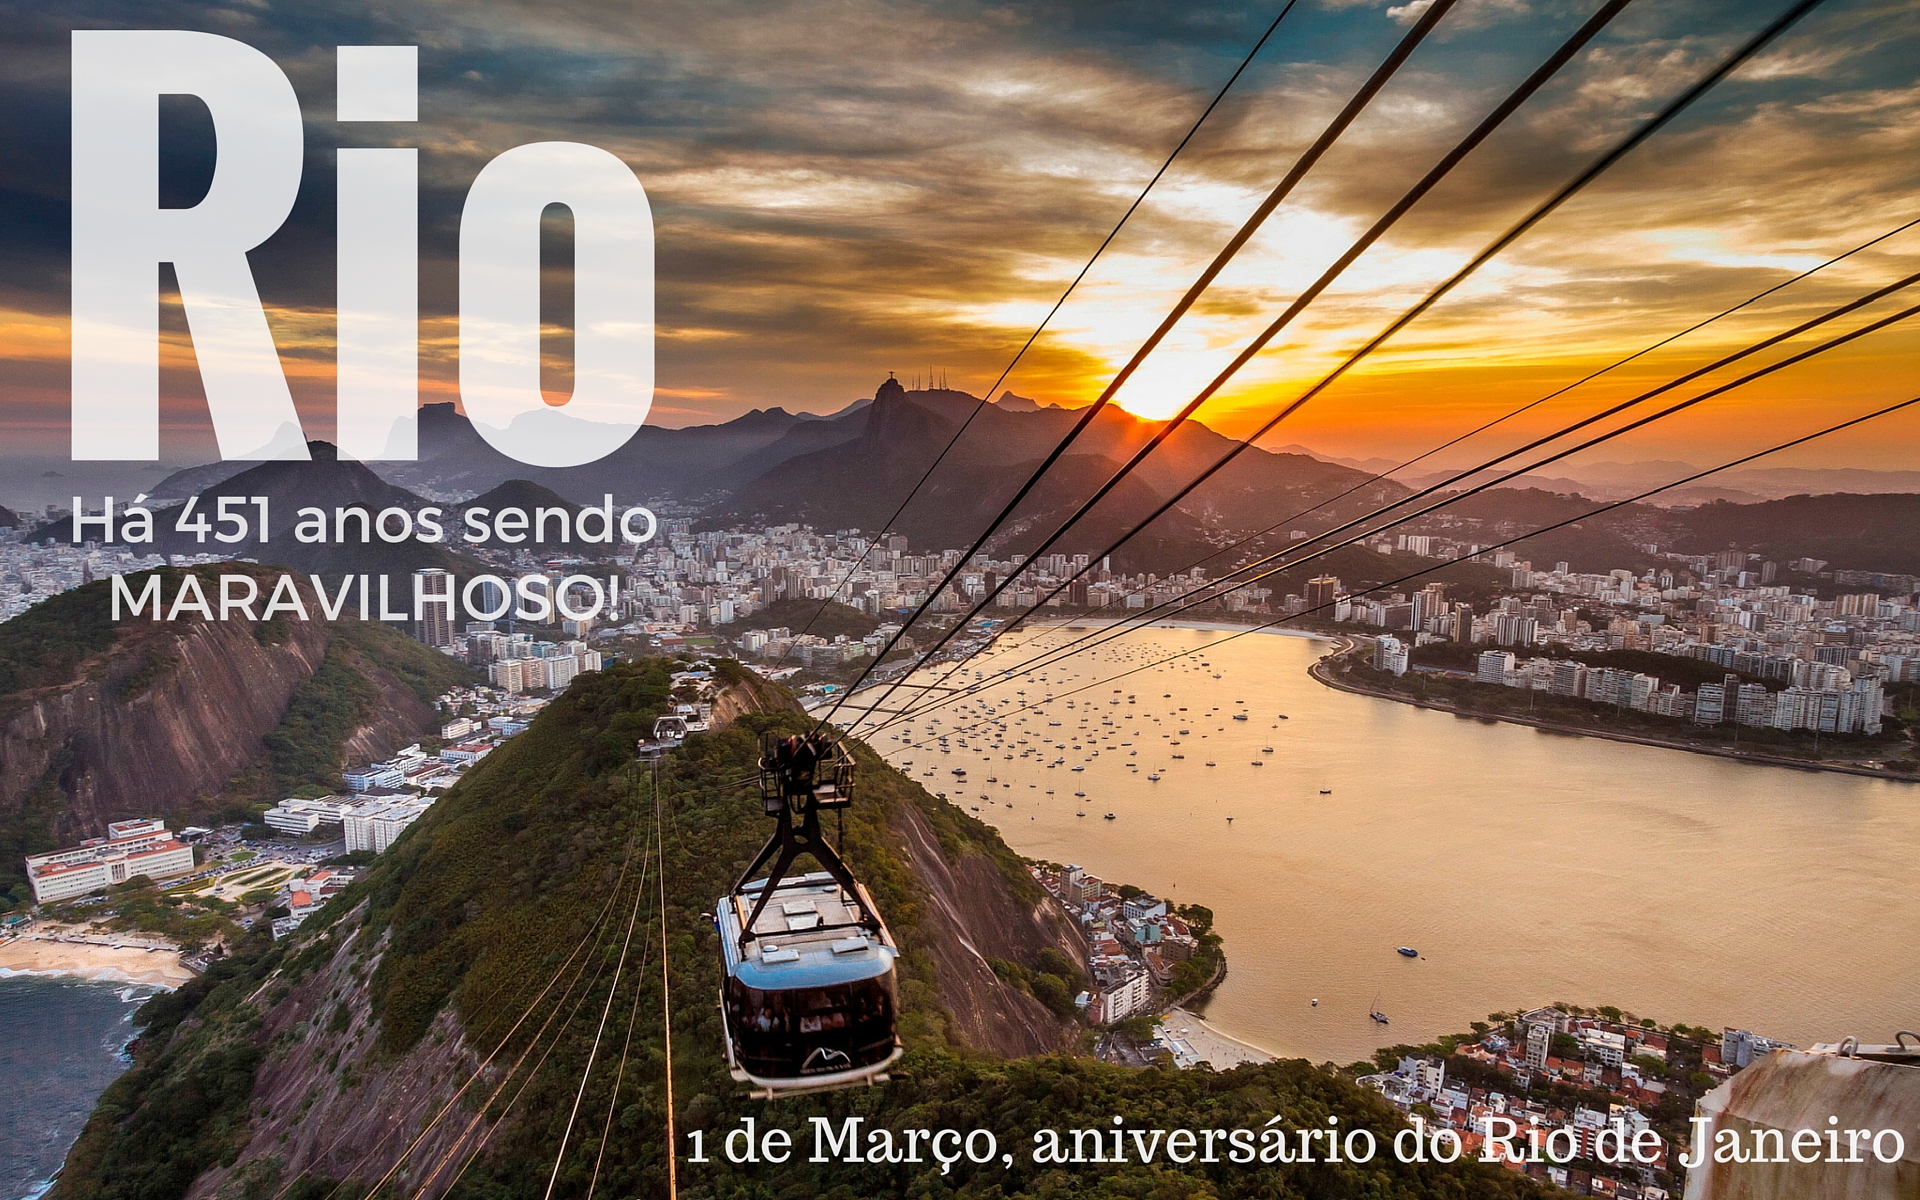 Aniversário do Rio de Janeiro